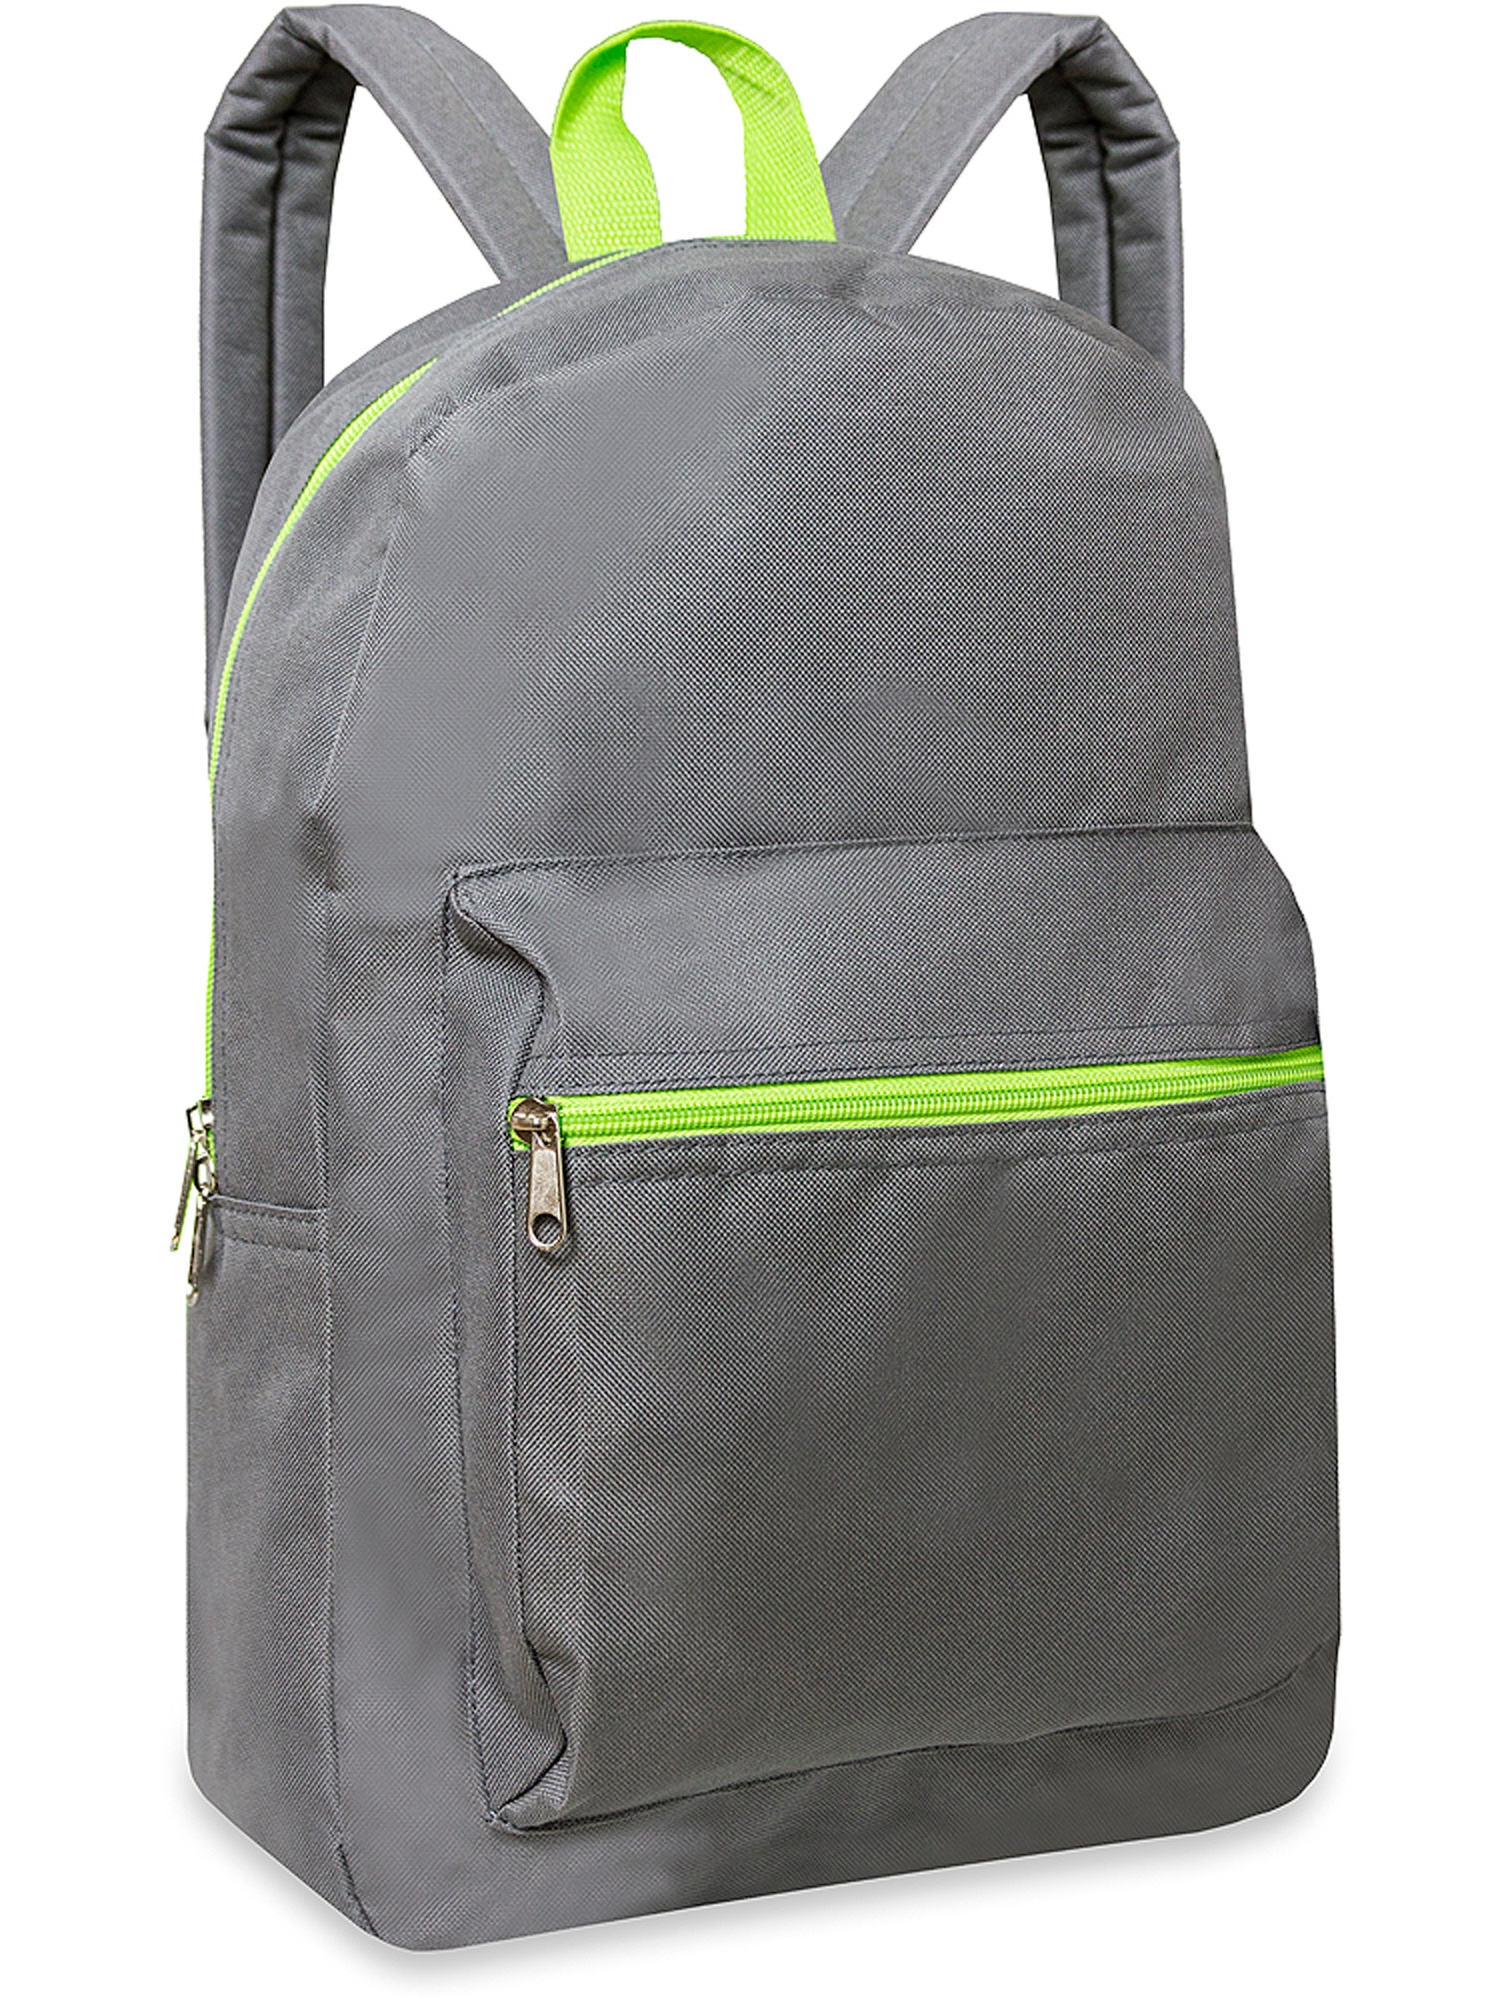 Basic 16'' Front Pocket Backpack - image 1 of 1